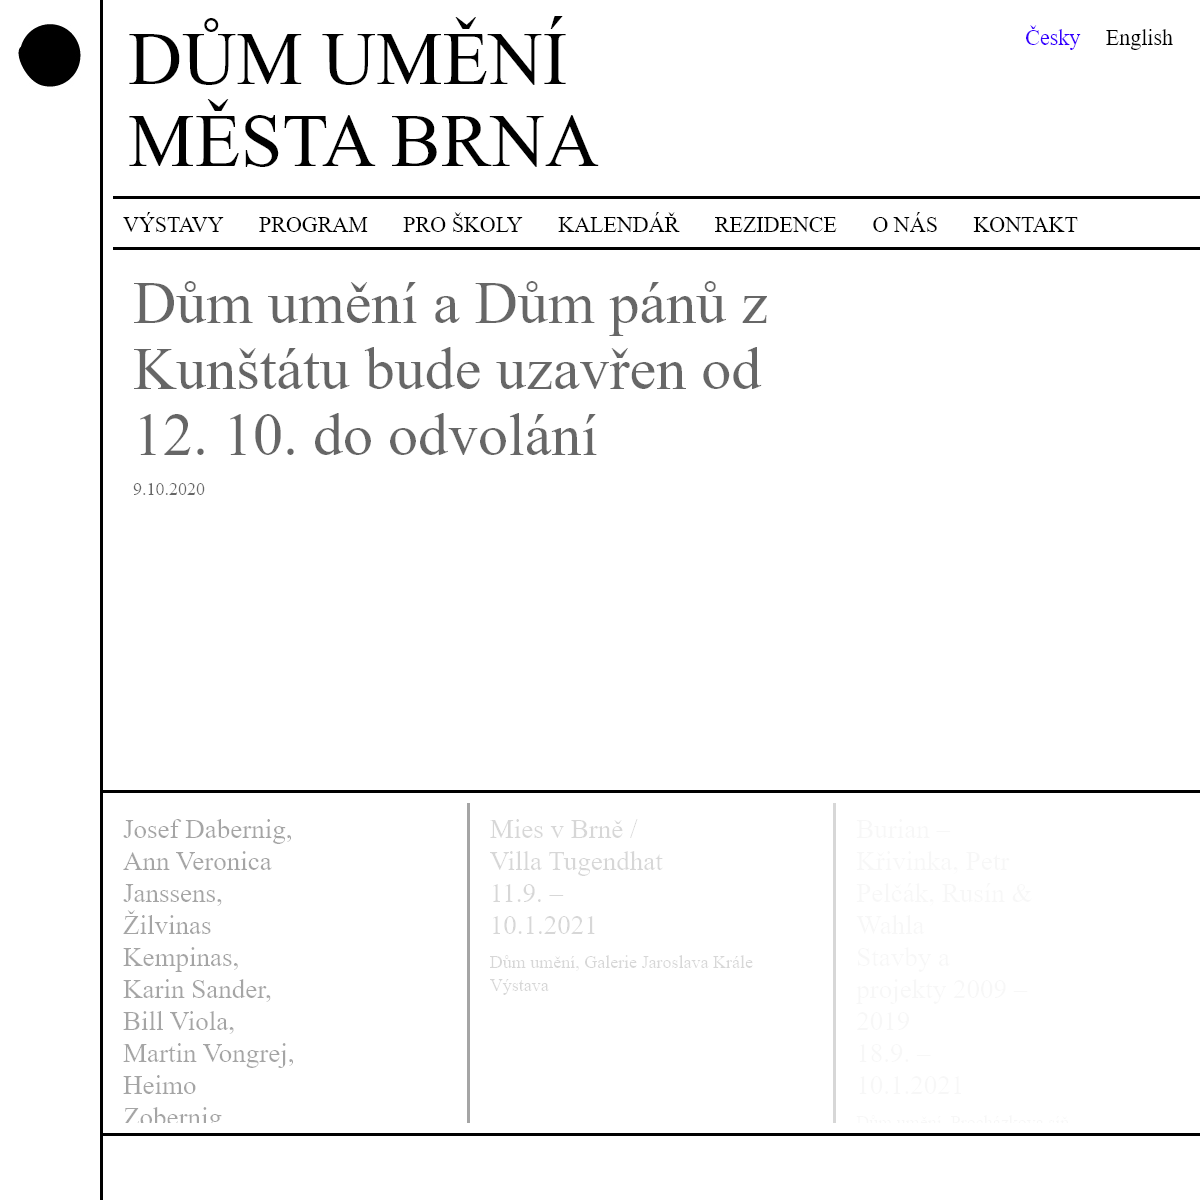 A complete backup of dum-umeni.cz